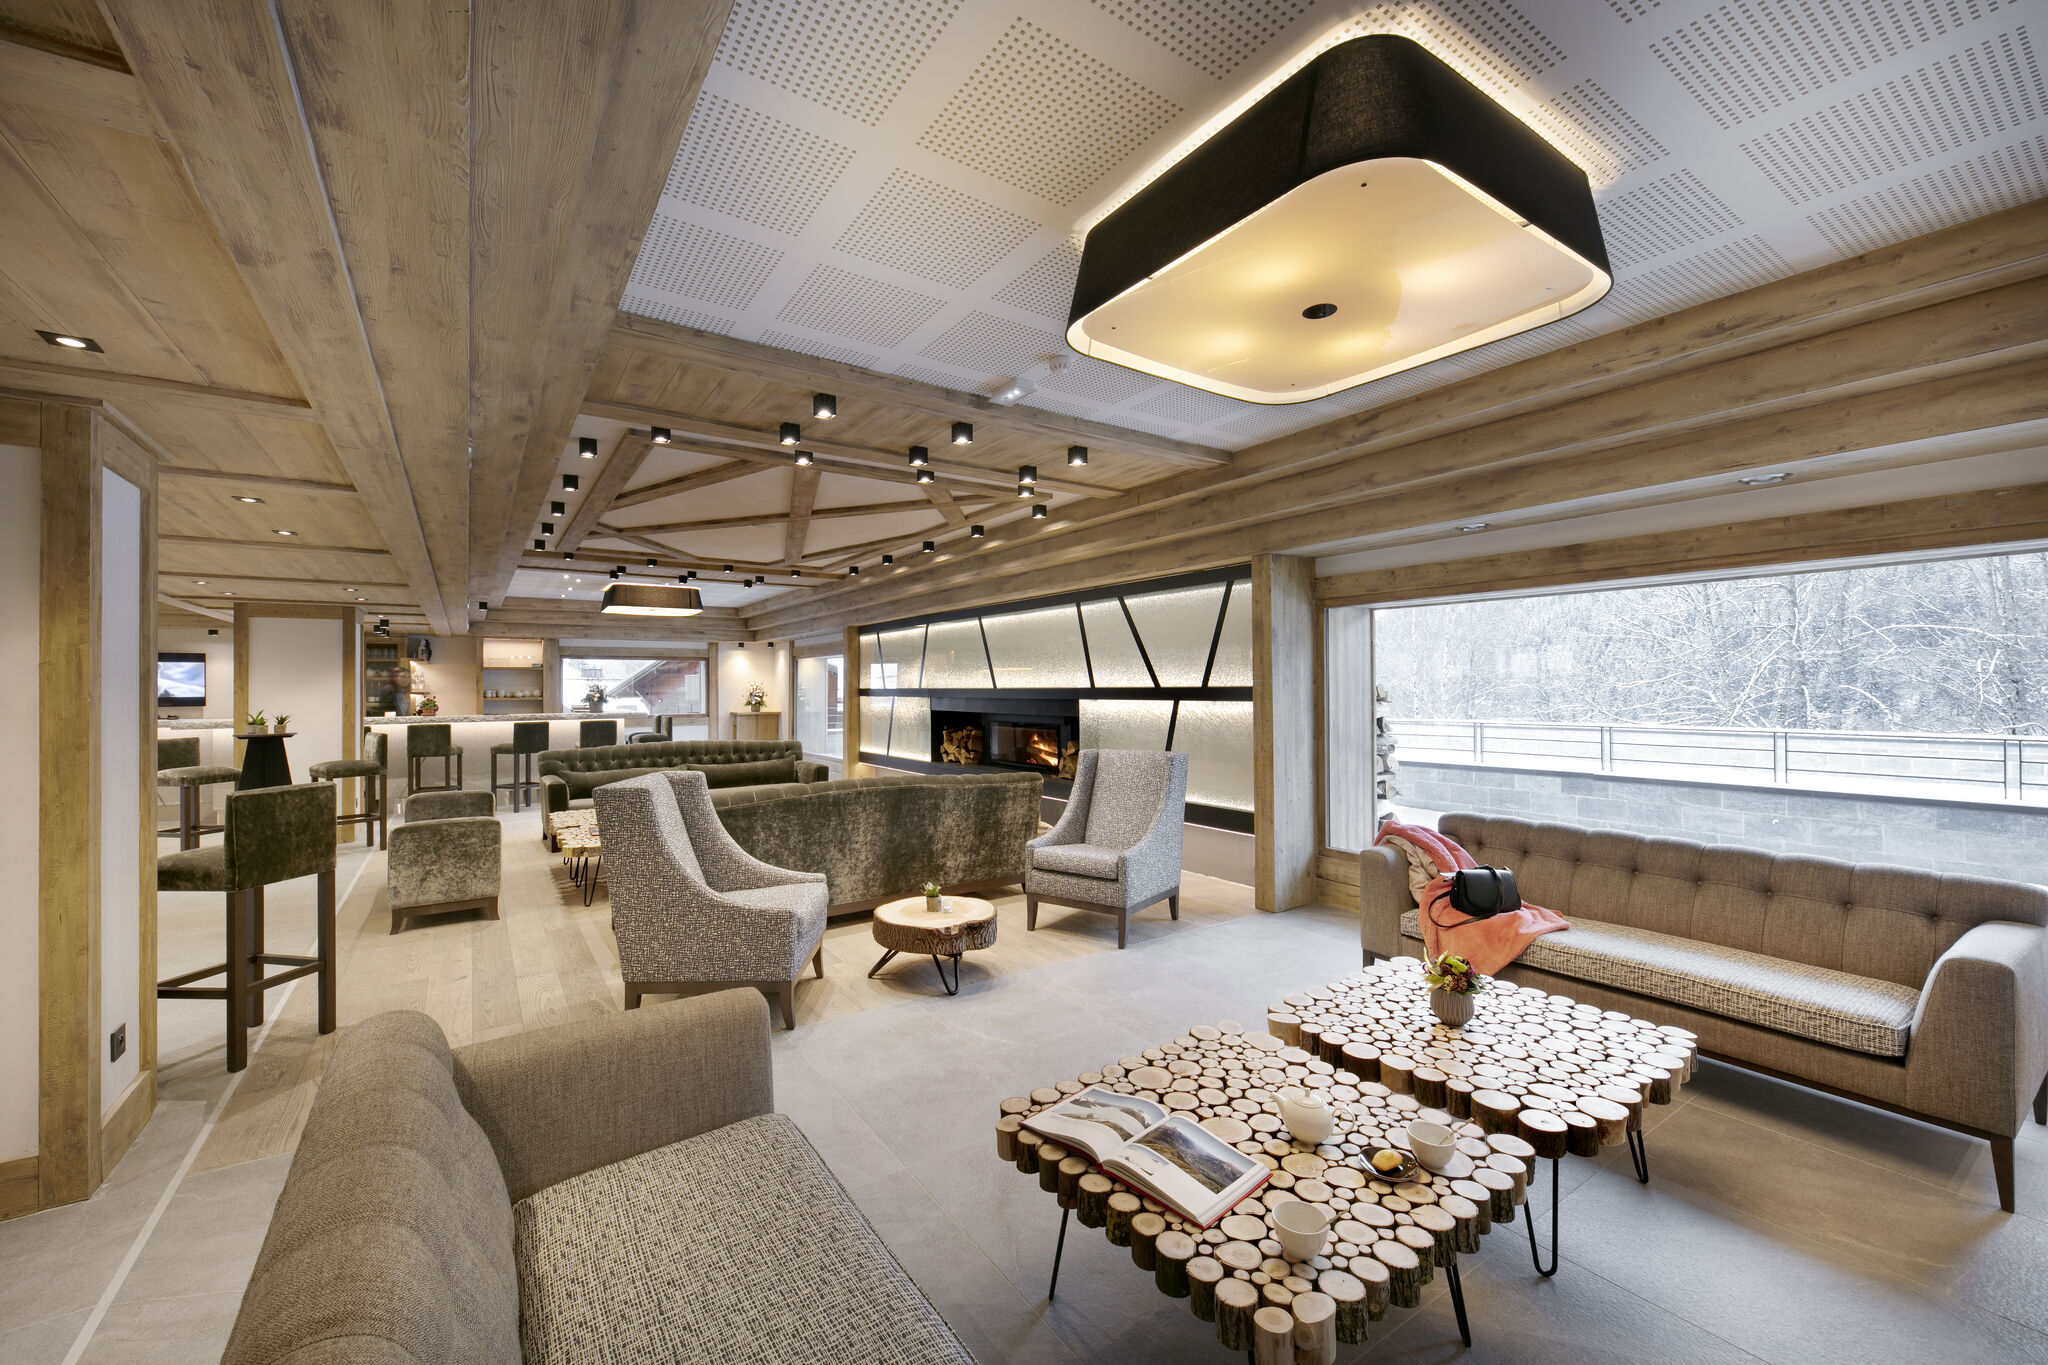 Modern eingerichtete Ferienwohnung am Fuße des Mont Blanc